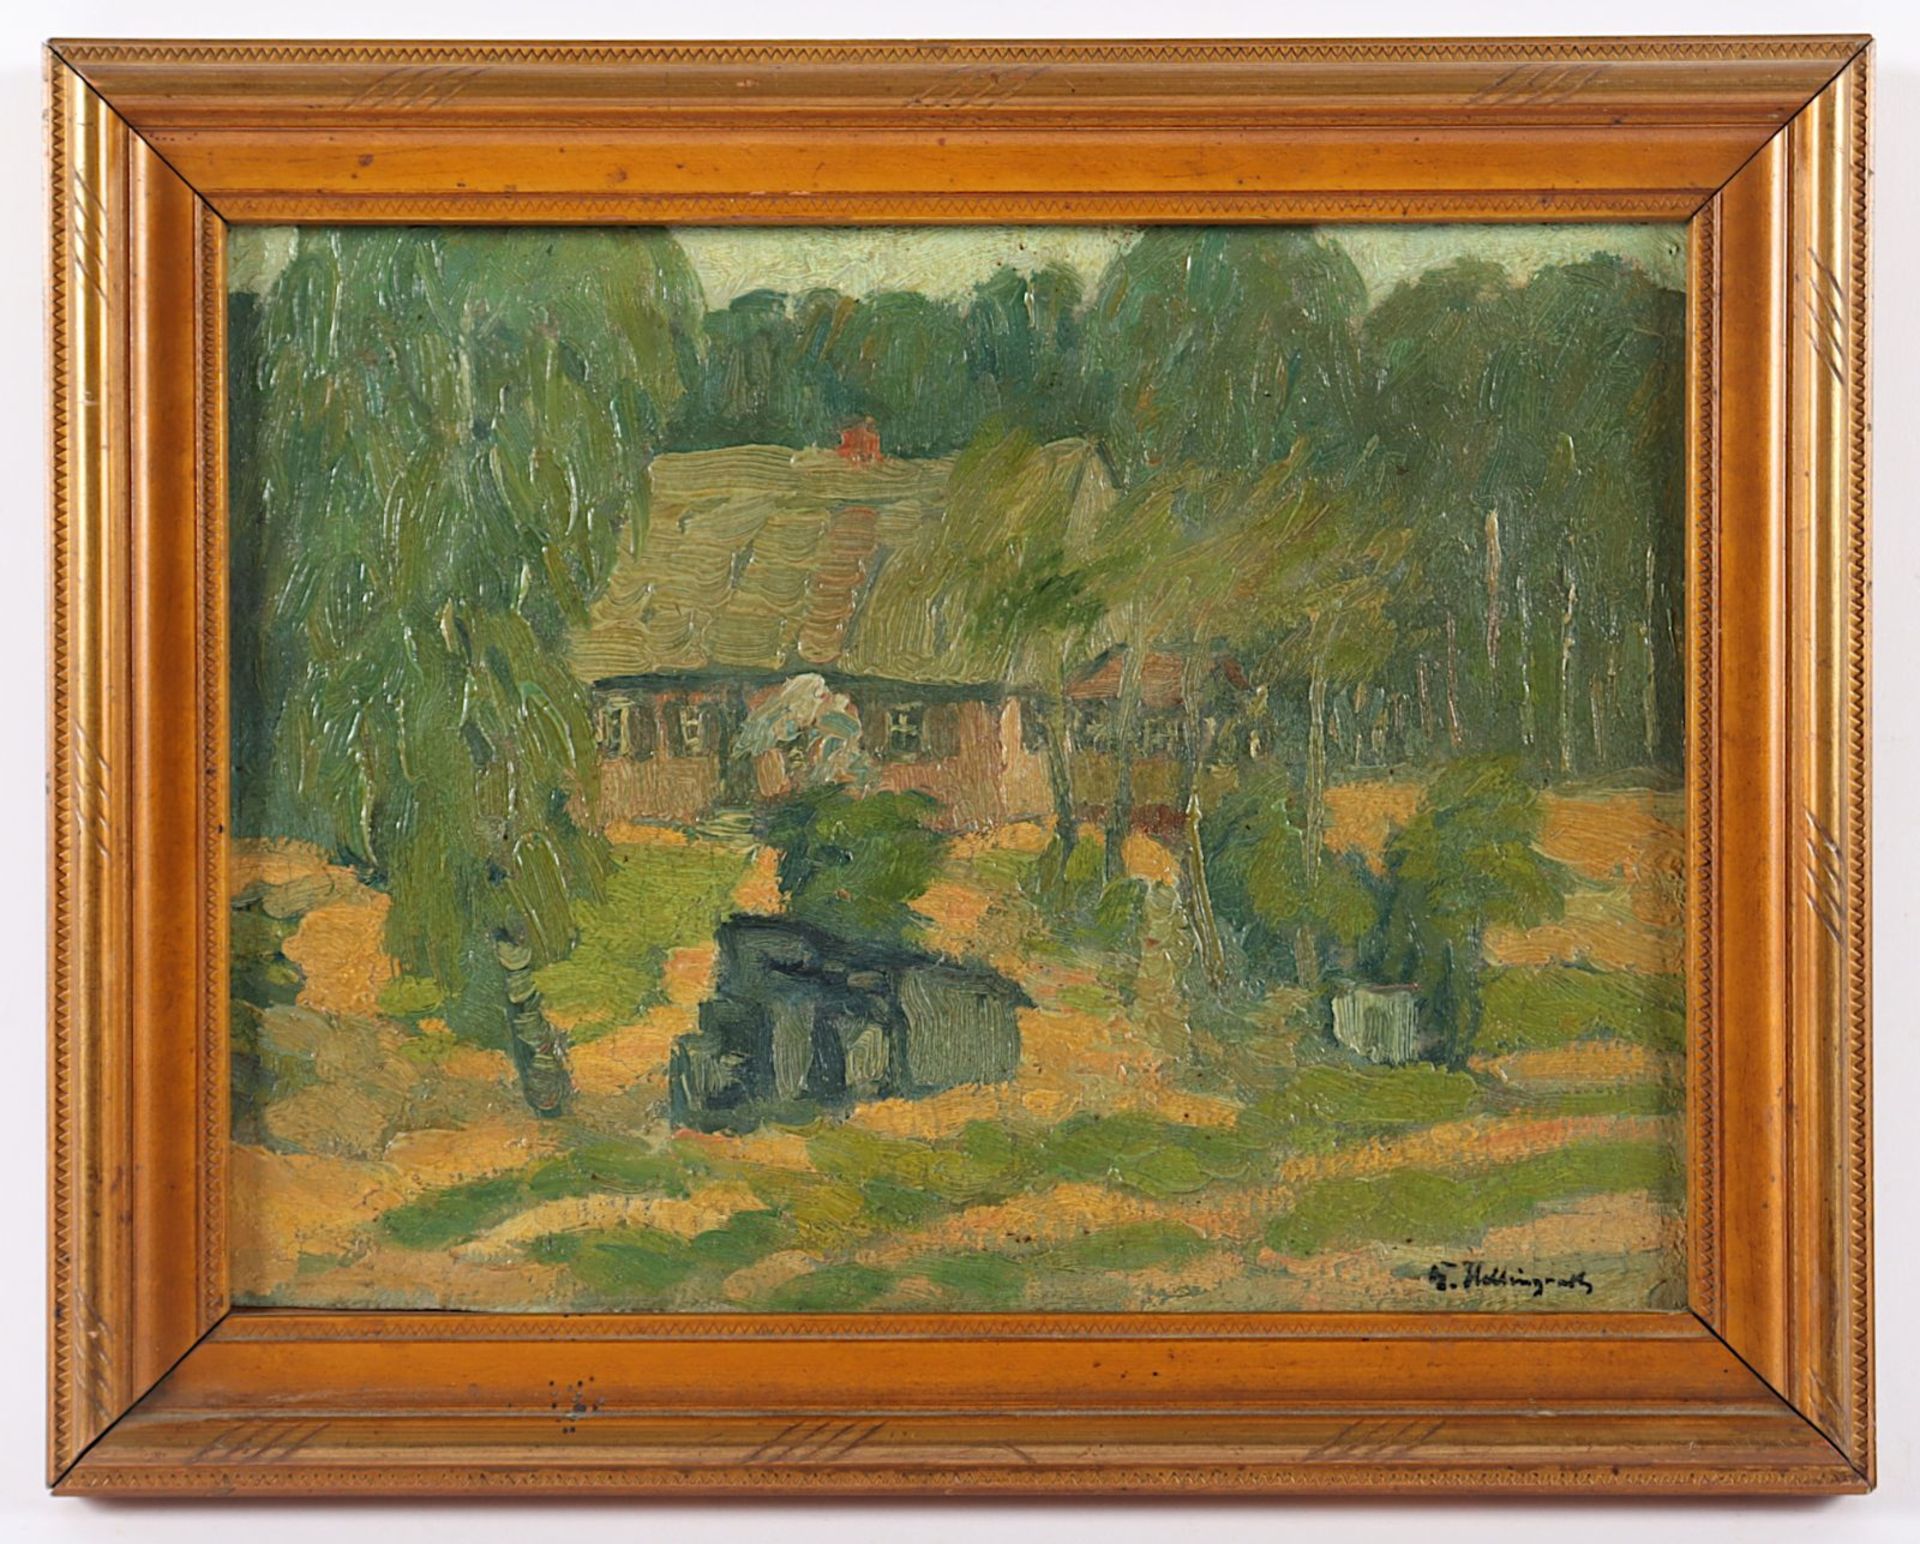 HELLINGRATH, Berthold (1877-1954), "Landschaft mit Gehöft", R.